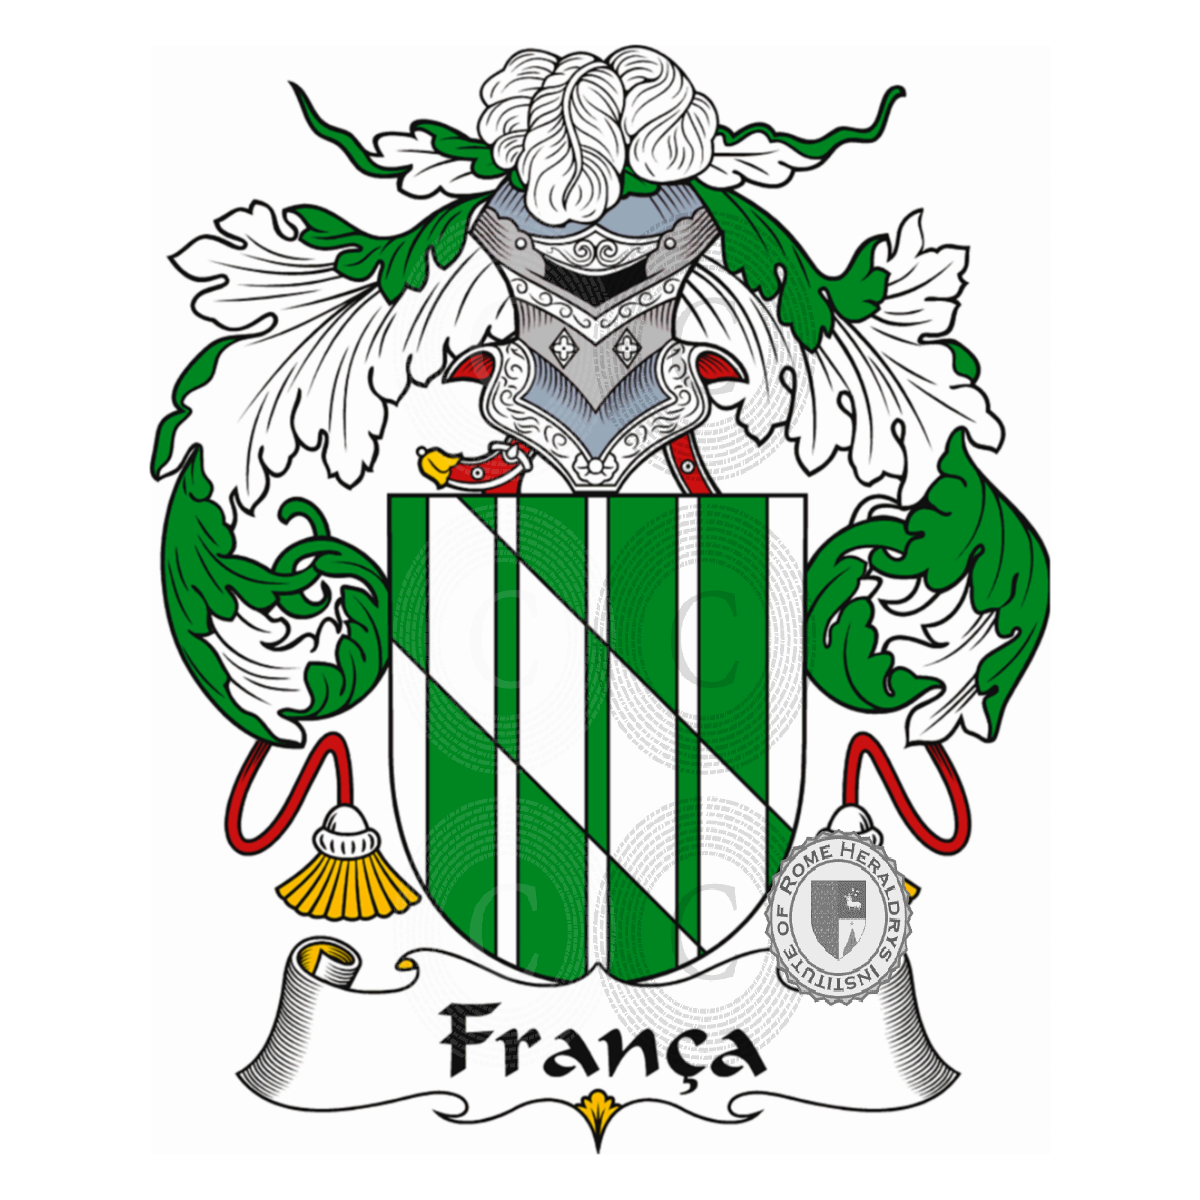 Wappen der FamilieFrança, França,França Netto,França-Netto